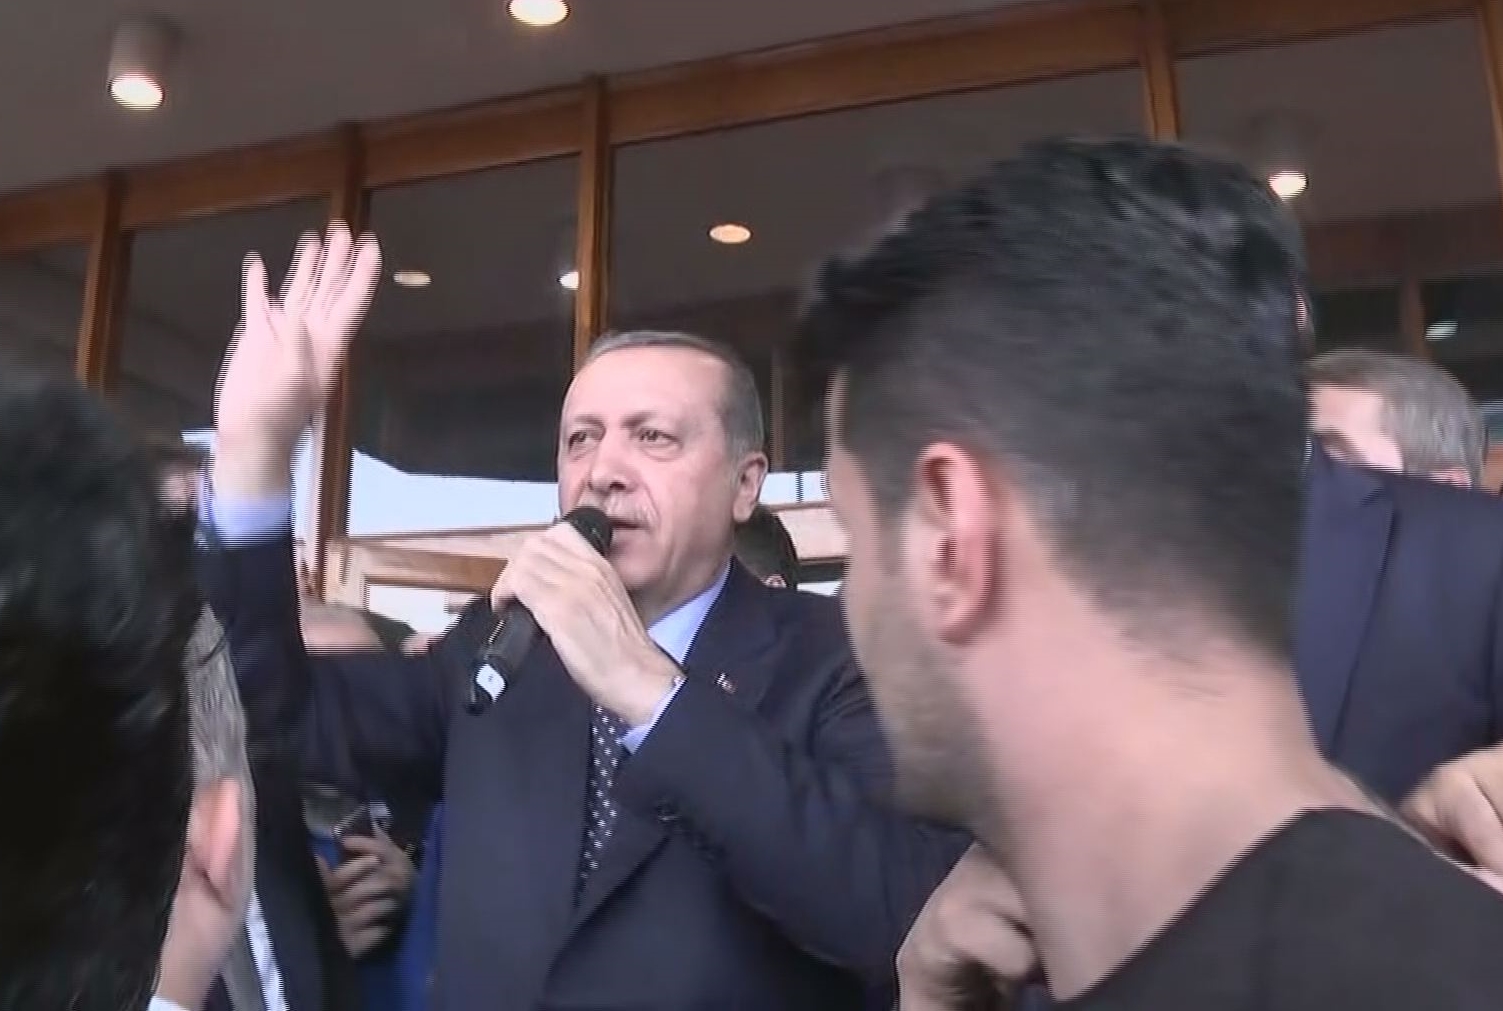 Обращаясь к толпе, собравшейся в аэропорту, Эрдоган описал путчистов как “негодяев”.